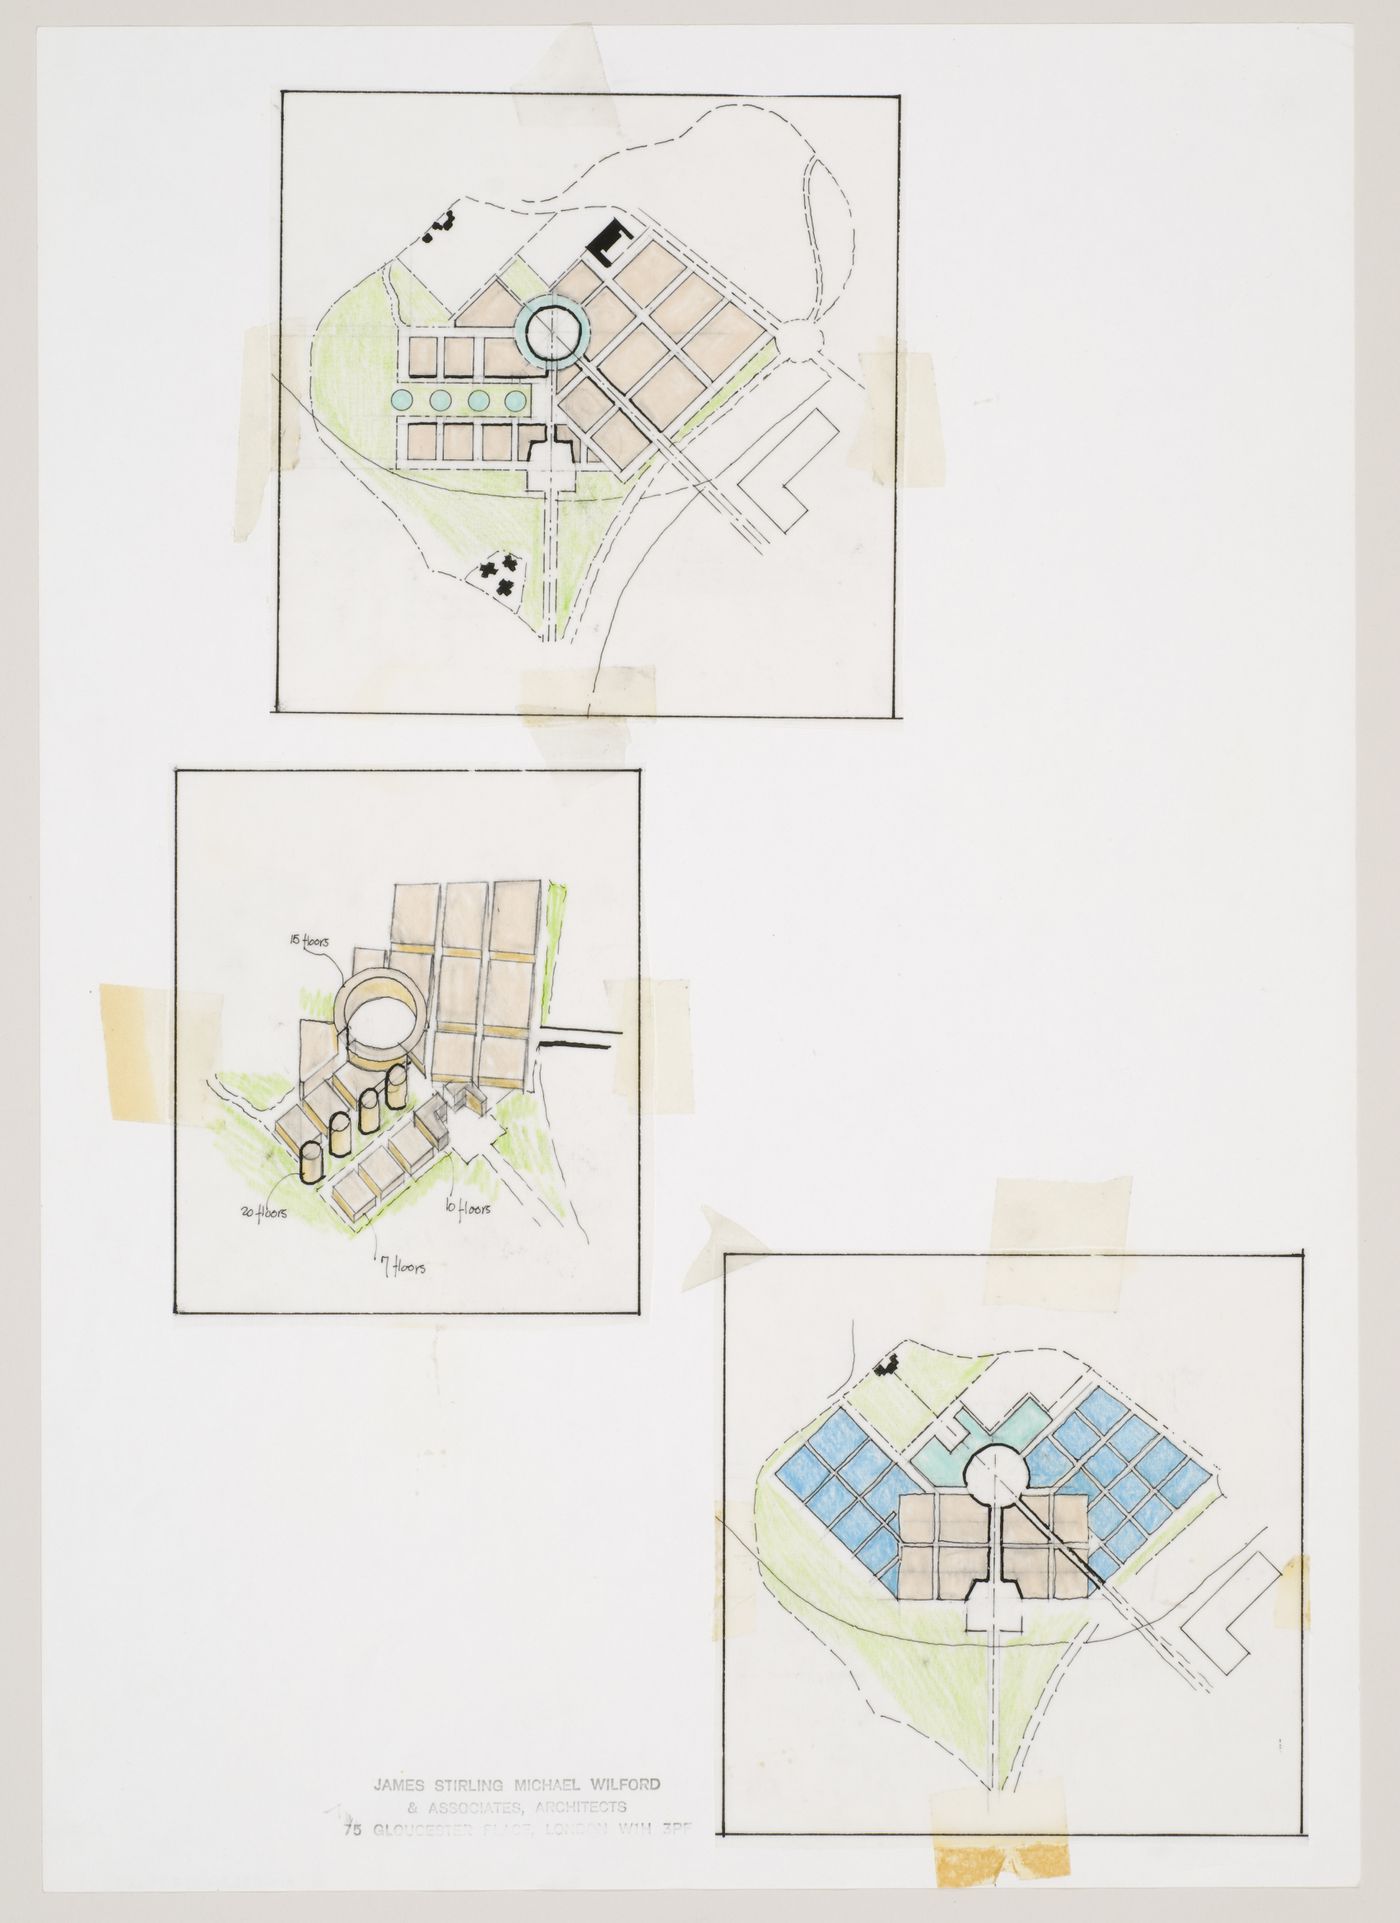 New Town Centre, Caselecchio di Reno, Italy: plans and axonometric